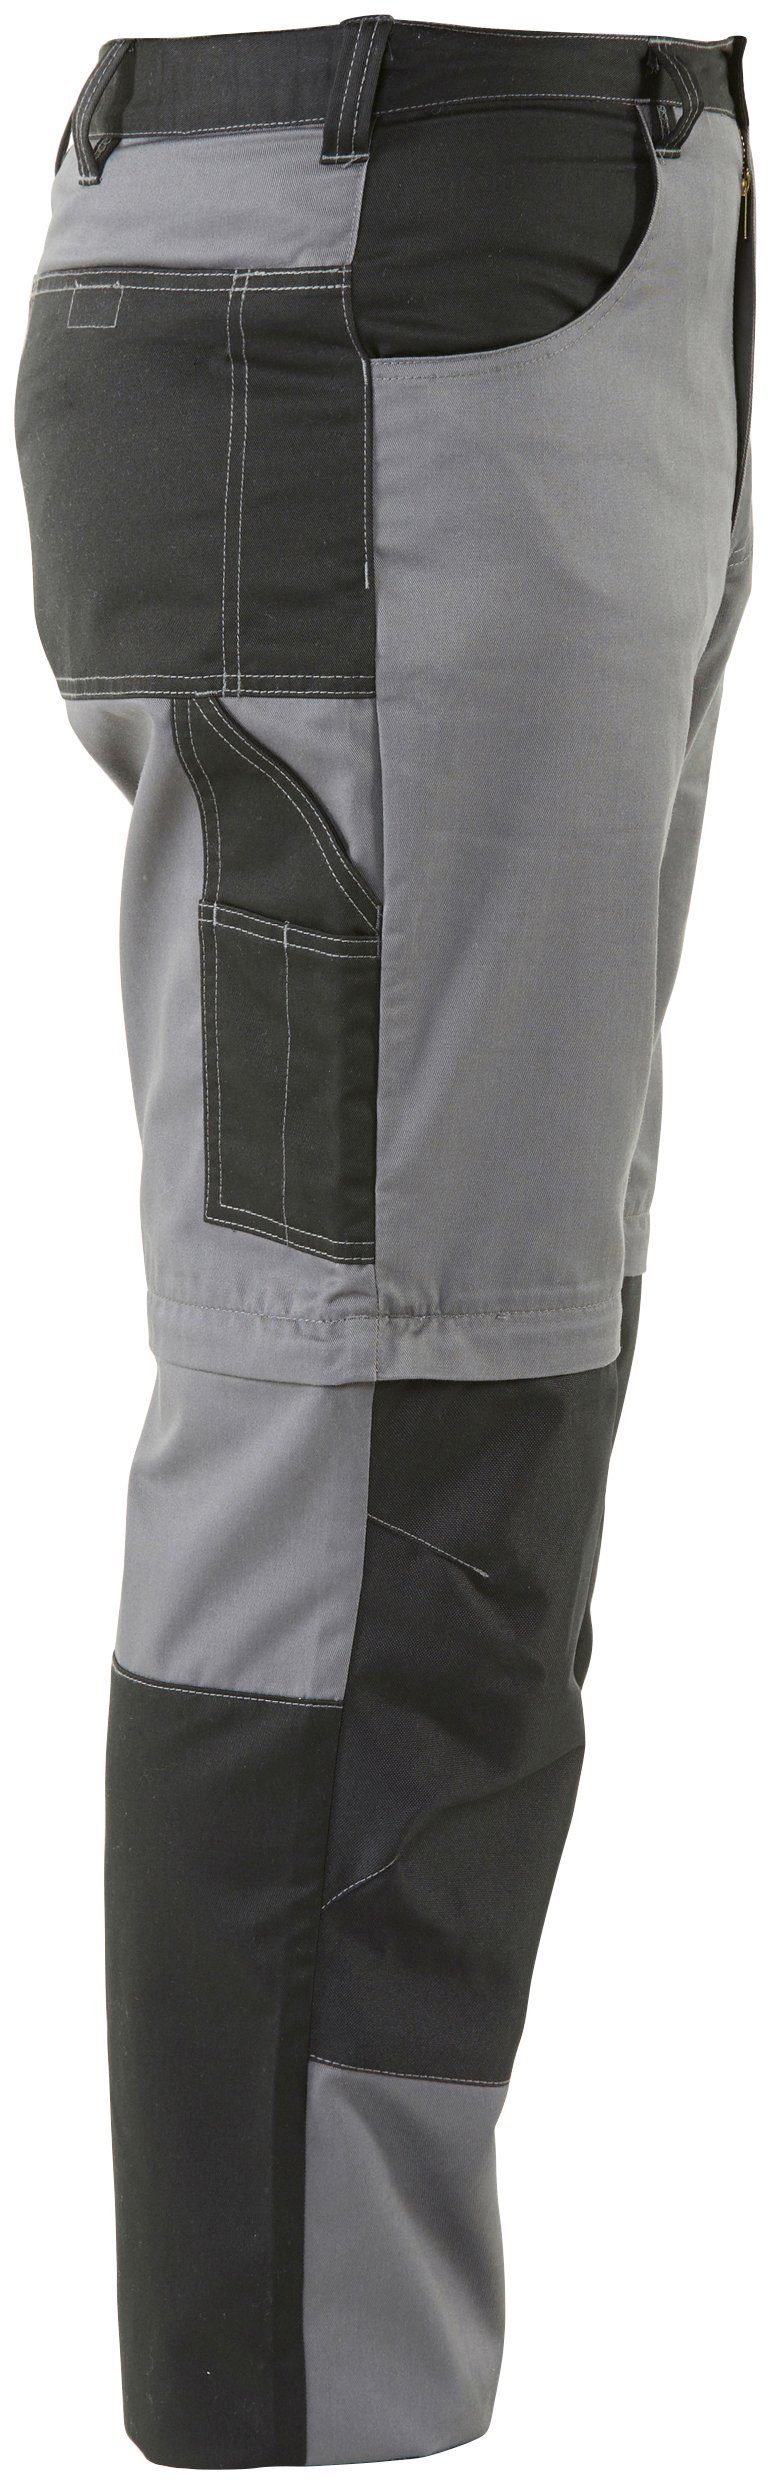 einem Arbeitshose möglich, Zipp-off lange Beinverlängerung Shorts 8 (verstärkter in Taschen) und Kniebereich, mit Funktion: Country Arbeitshose Northern Worker